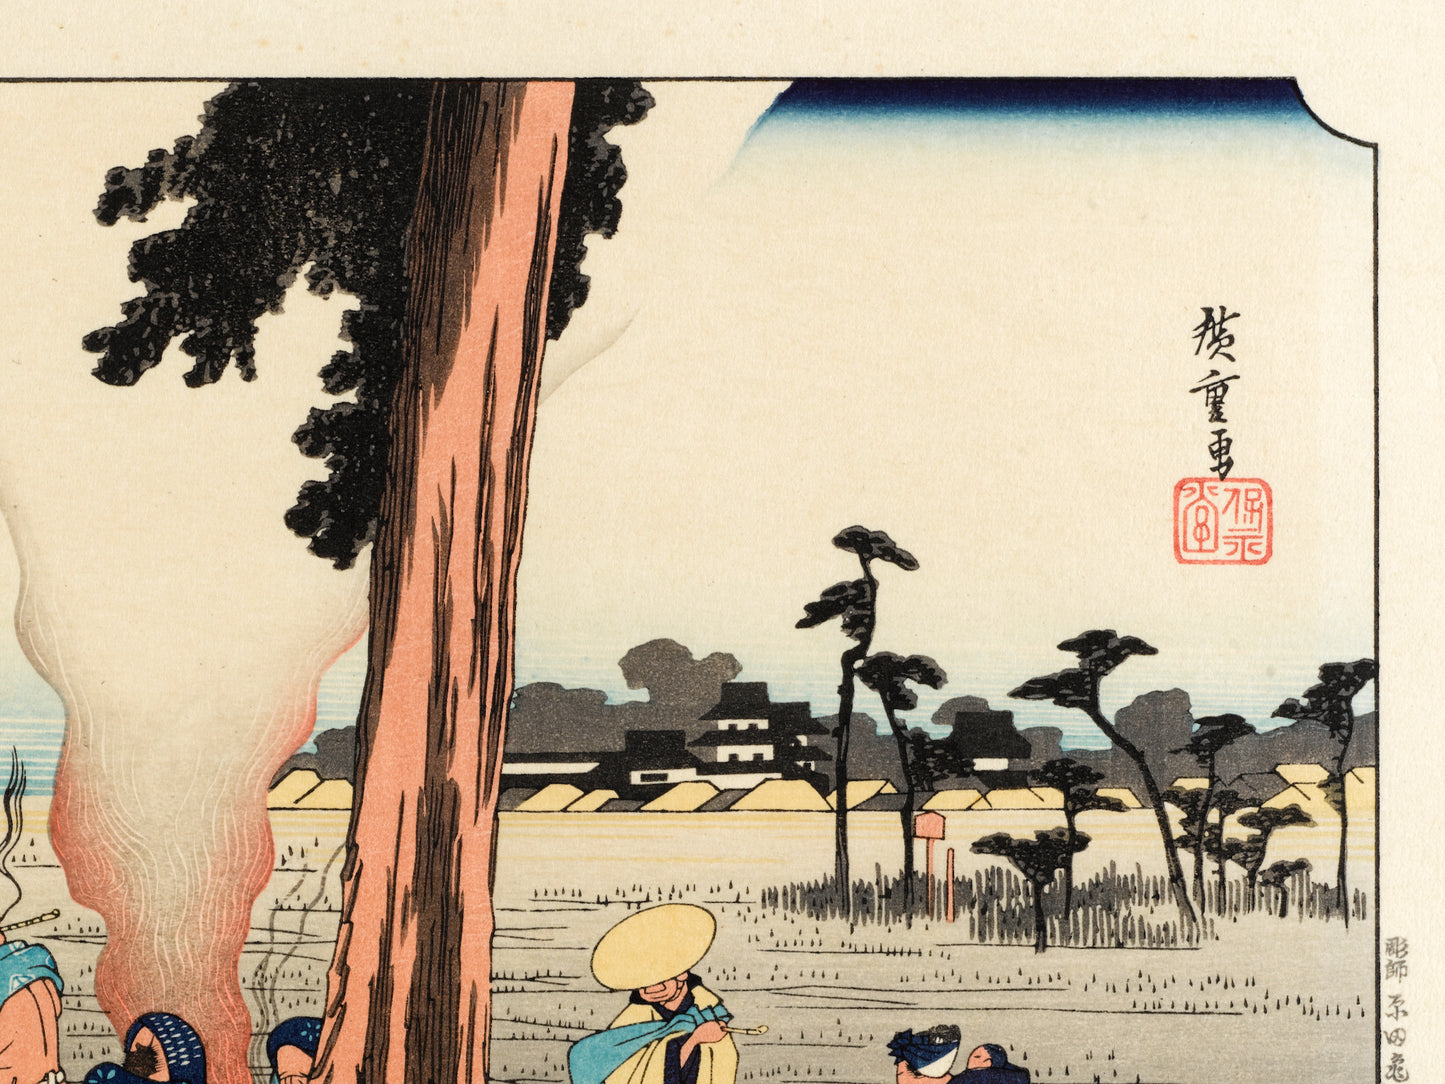 estampe japonaise de hiroshige grand tokaido des voyageurs font halte sous un pin, signature artiste